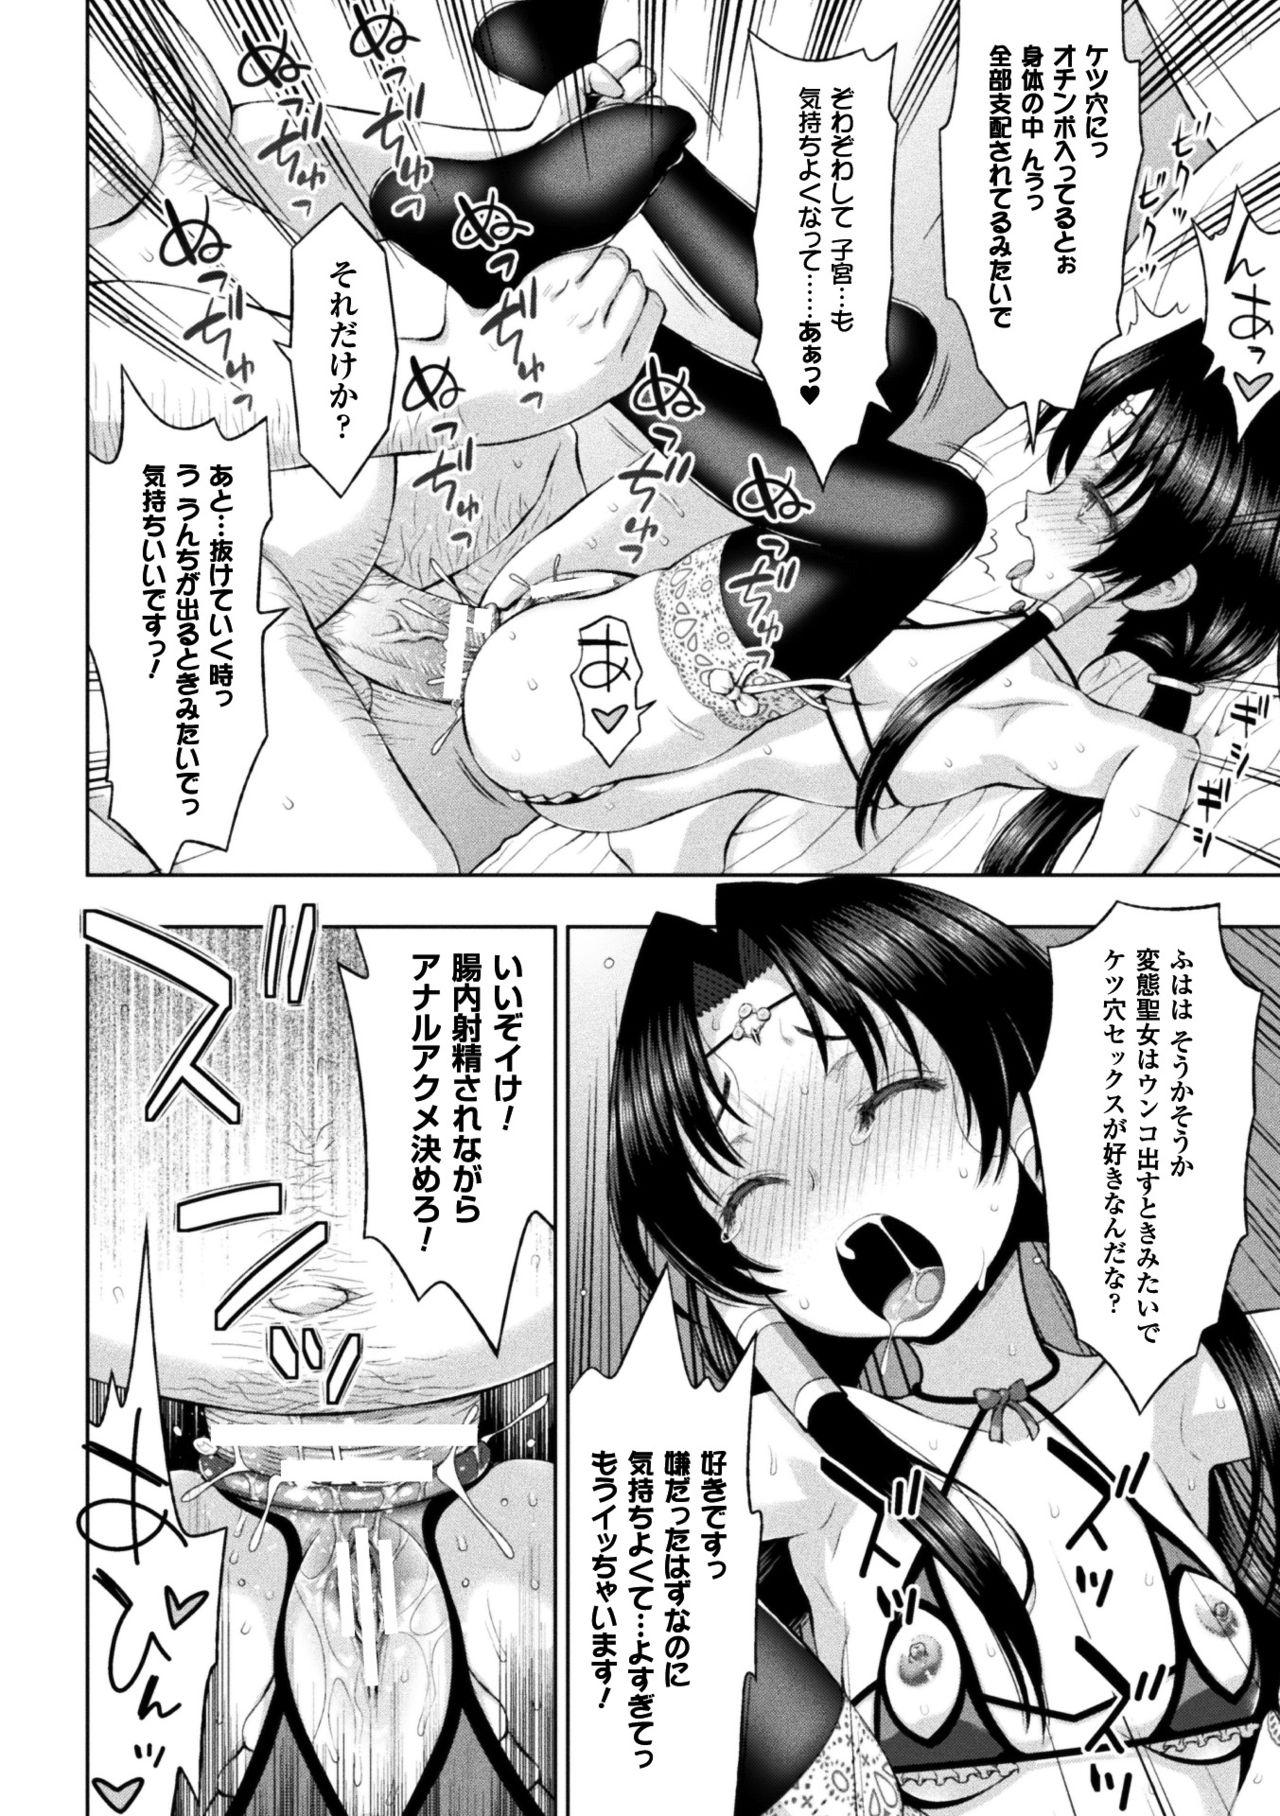 Seigi no Heroine Kangoku File Vol. 14 49